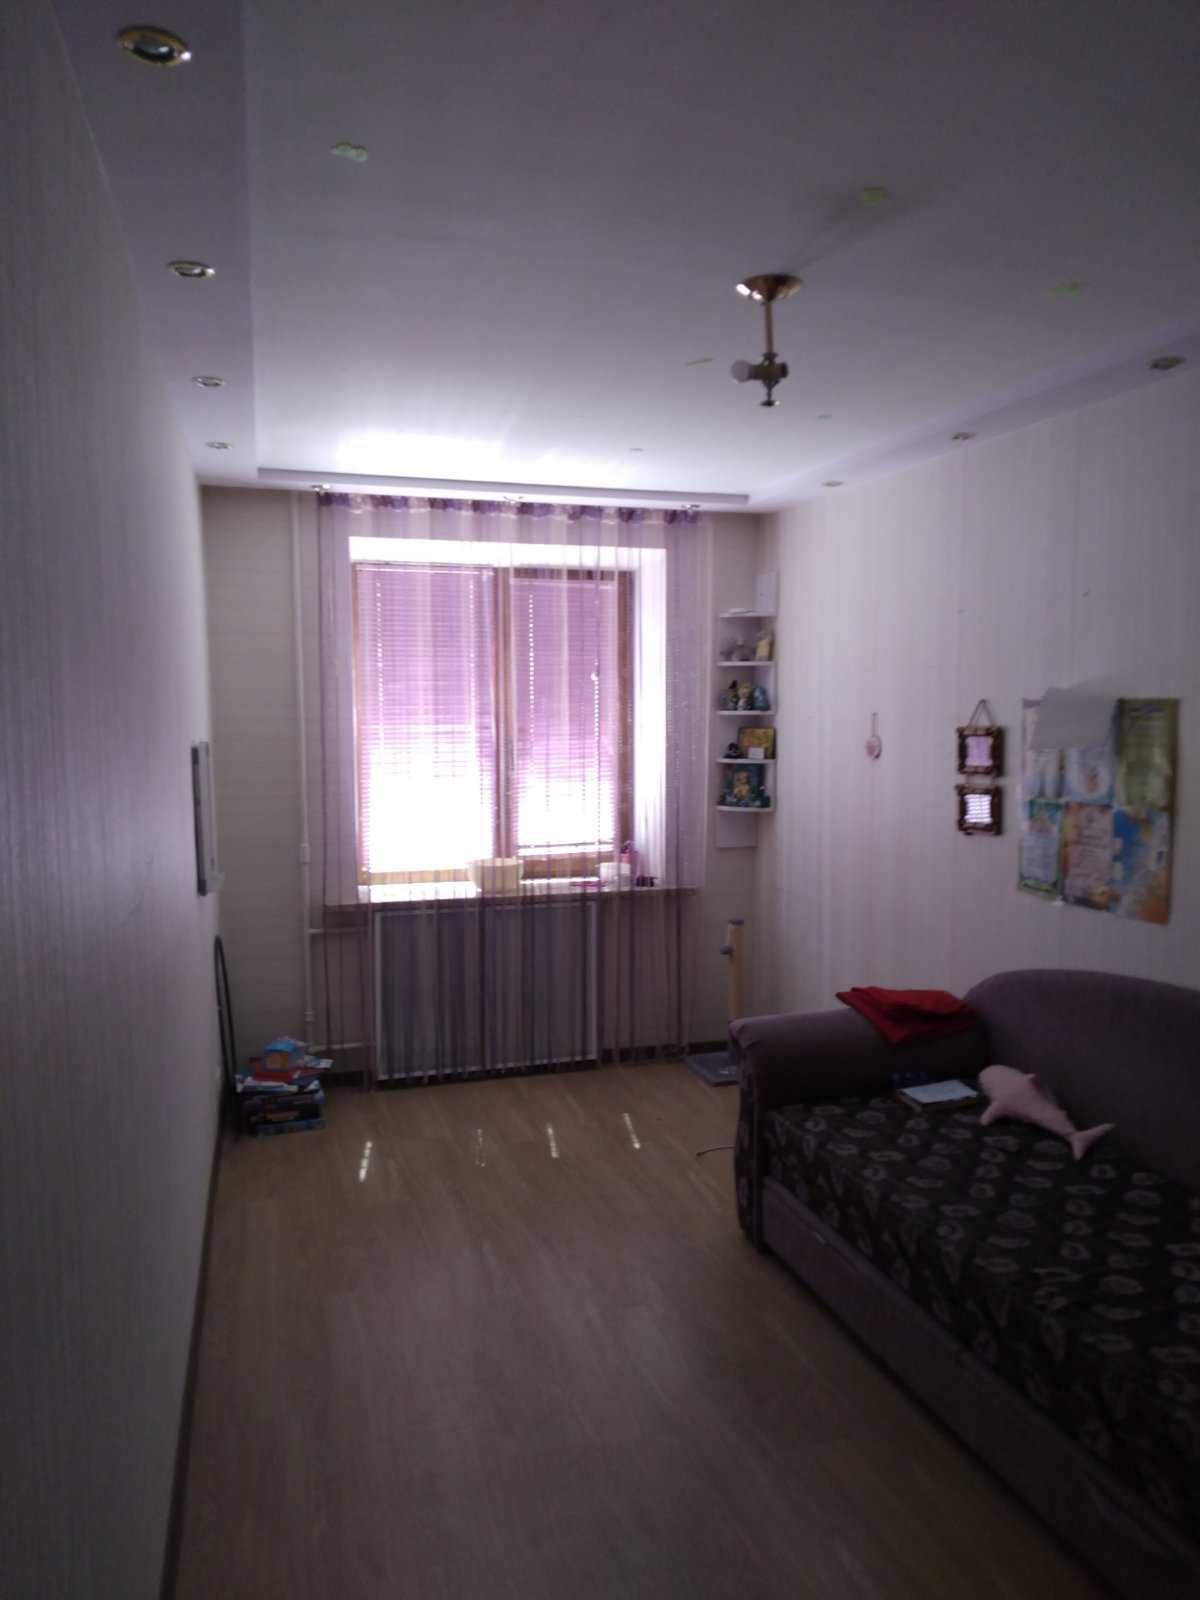 Квартира 3-х кімнатна, 62 кв.м. Конотоп, пр-т. Миру 12